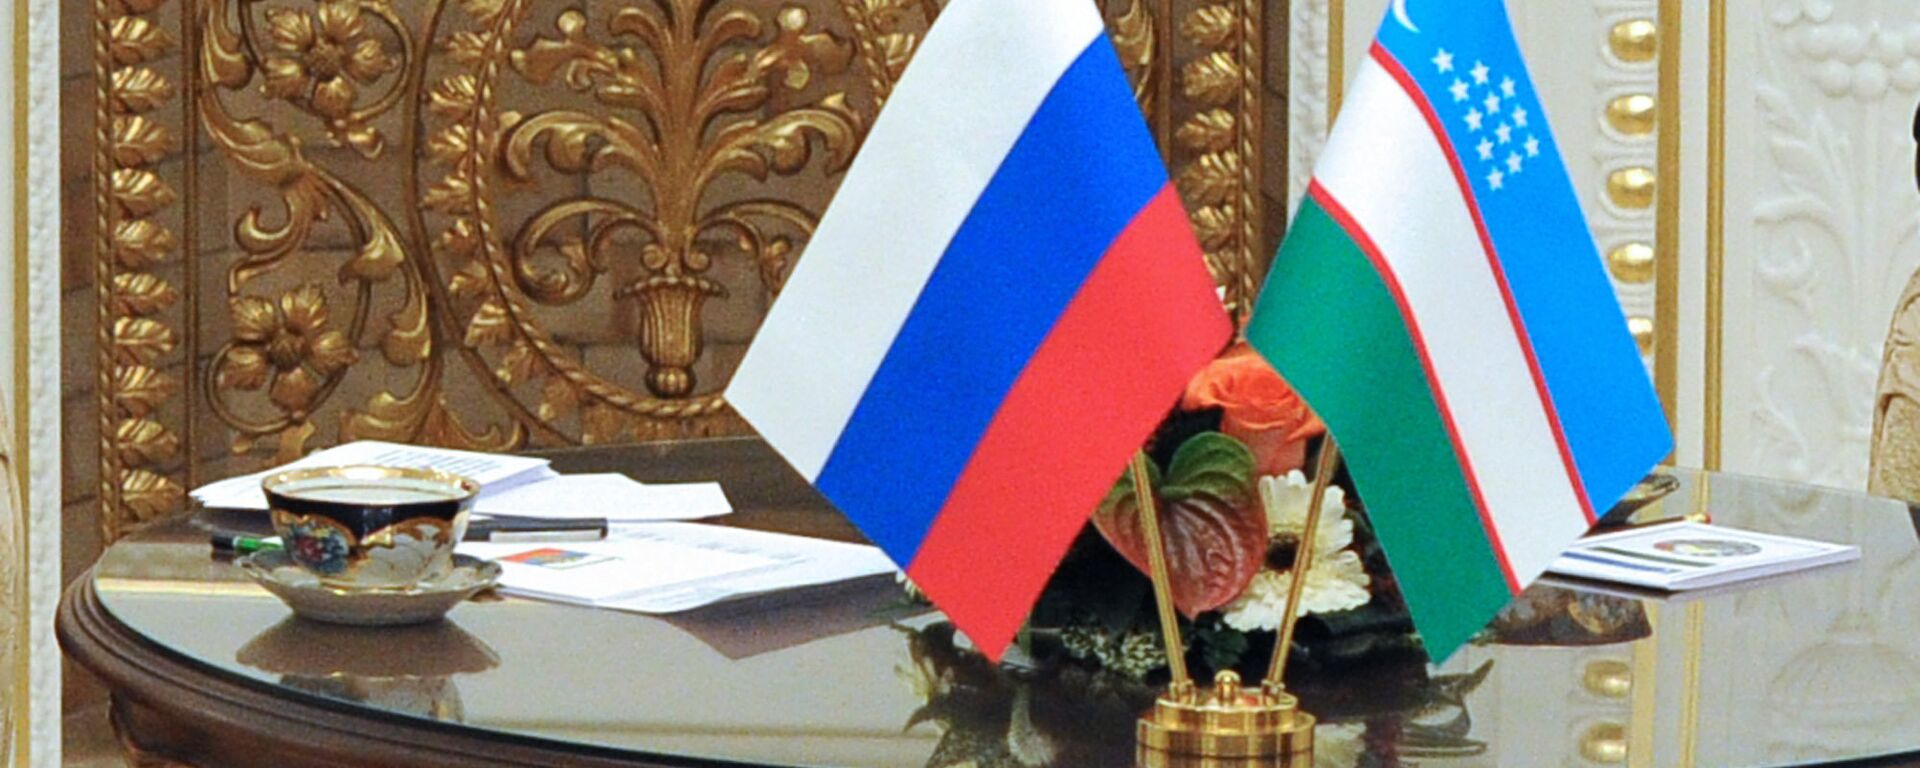 Государственные флаги России и Узбекистана - Sputnik Узбекистан, 1920, 09.11.2018